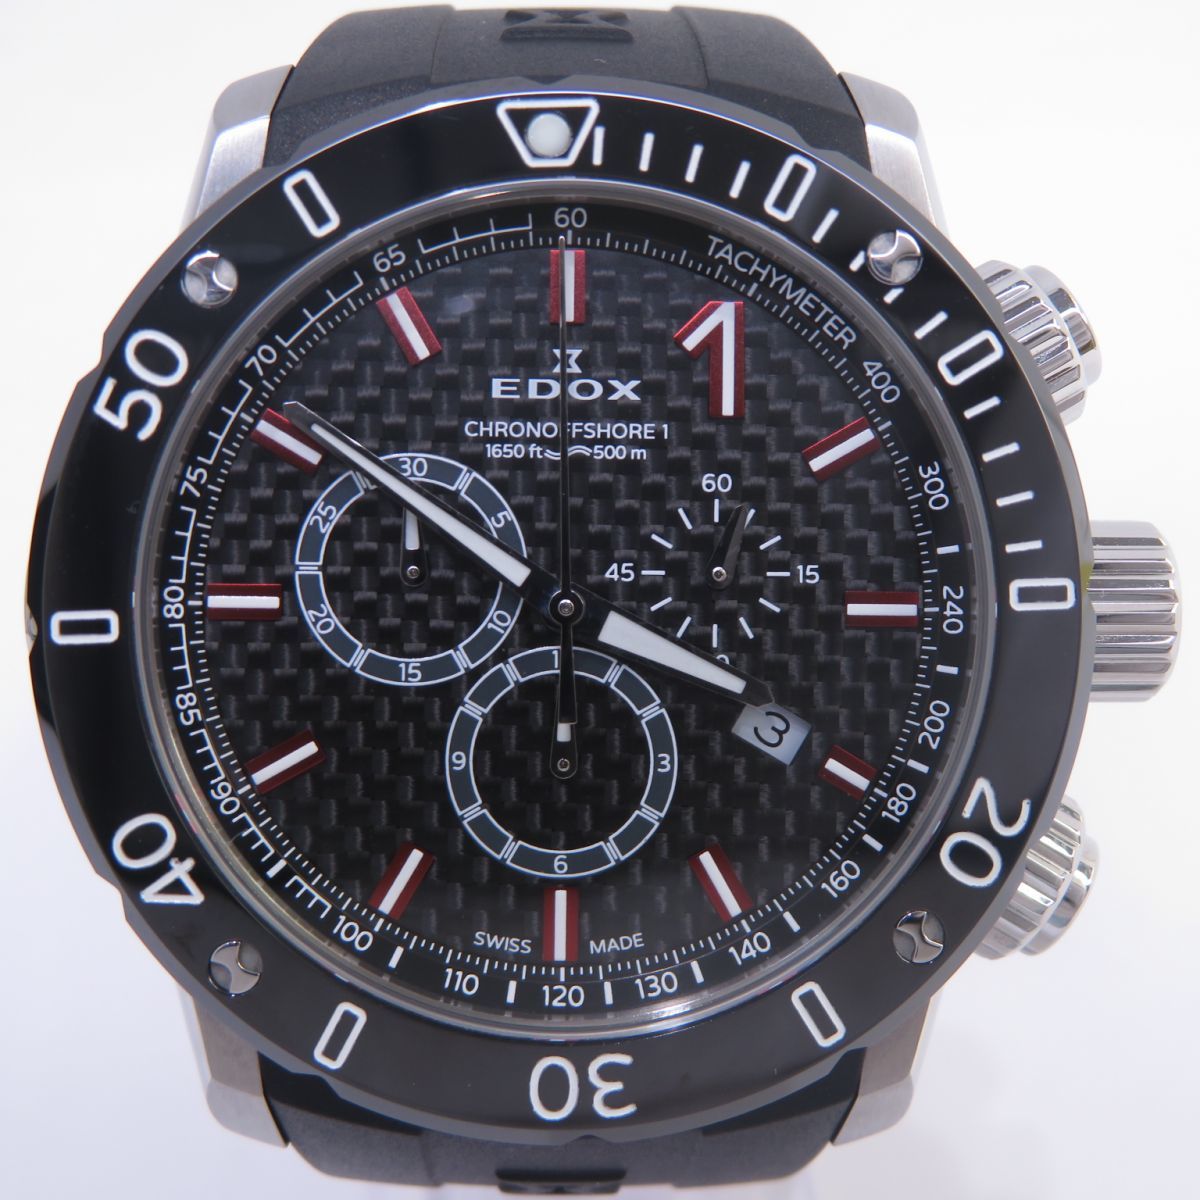 158s EDOX エドックス クロノオフショア1 クロノグラフ 10221-3-NIRO2 クォーツ腕時計 ※中古美品